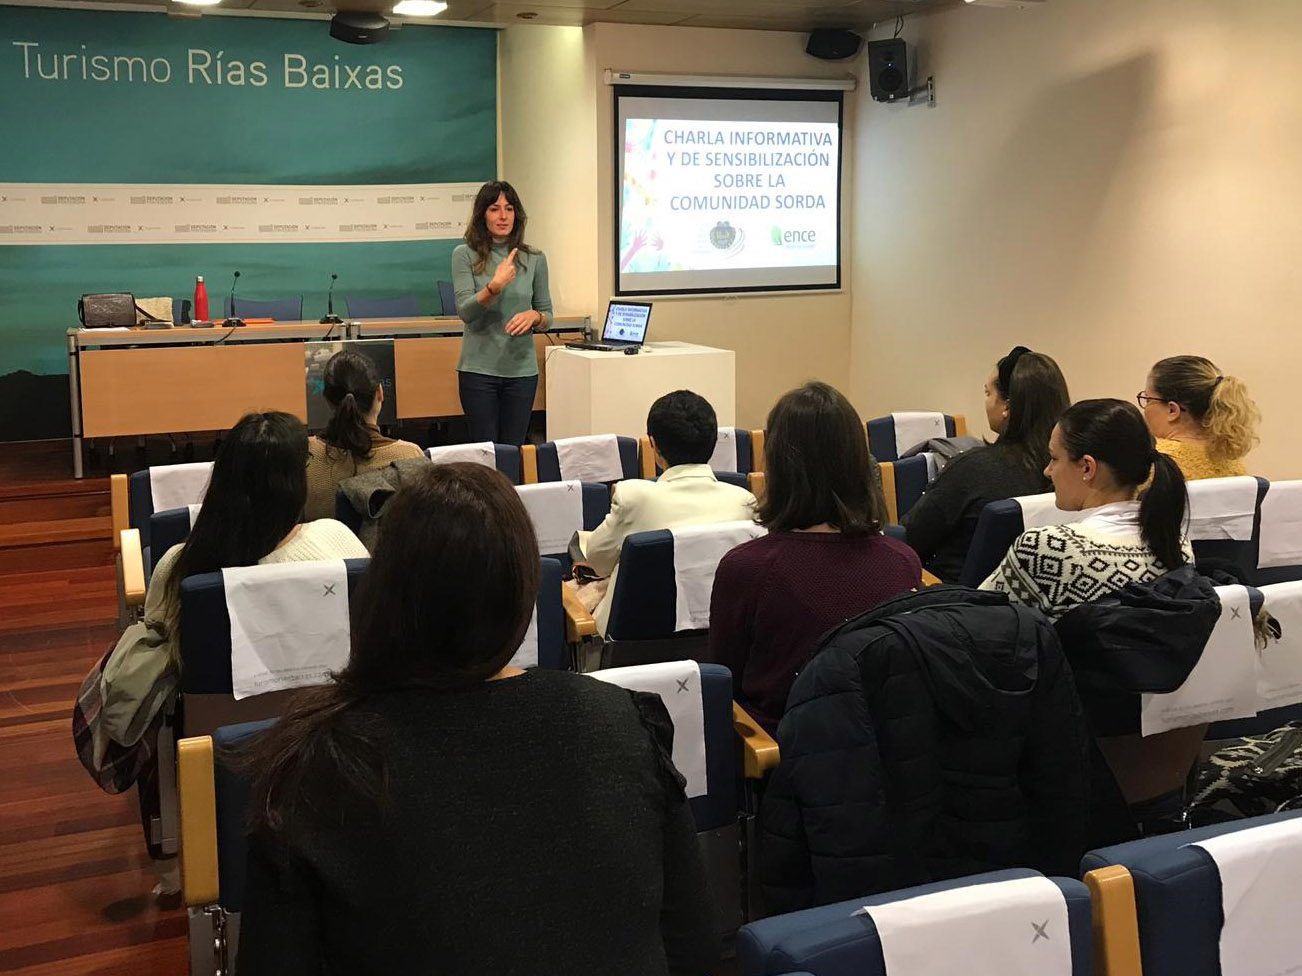 La Ruta do Viño Rías Baixas y Turismo Rías Baixas organizan una charla informativa en colaboración con la Asociación de Persoas Xordas de Pontevedra